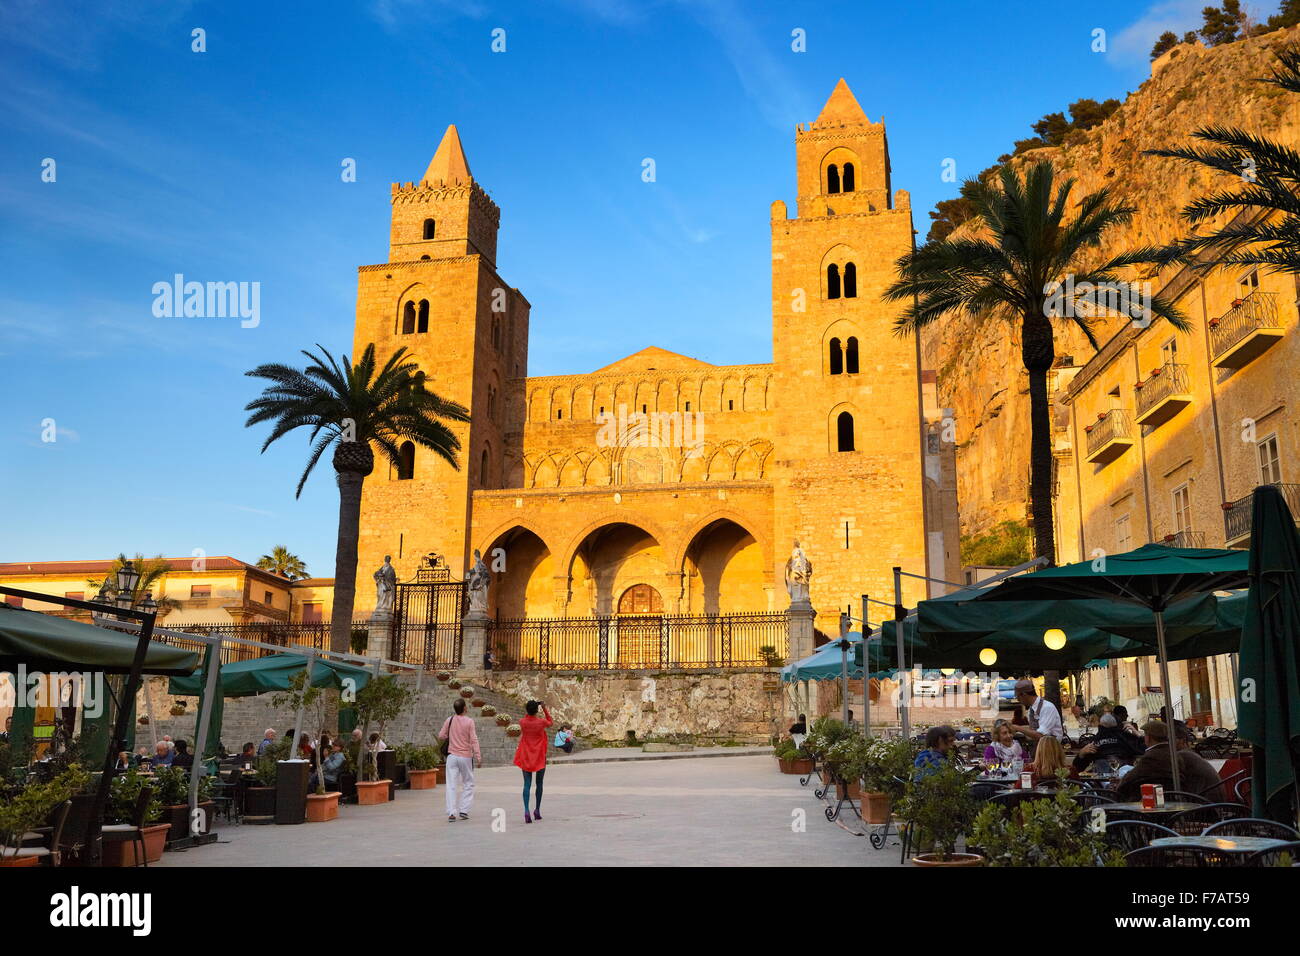 Cefalu - Cattedrale al tramonto del tempo, isola di Sicilia, Italia Foto Stock